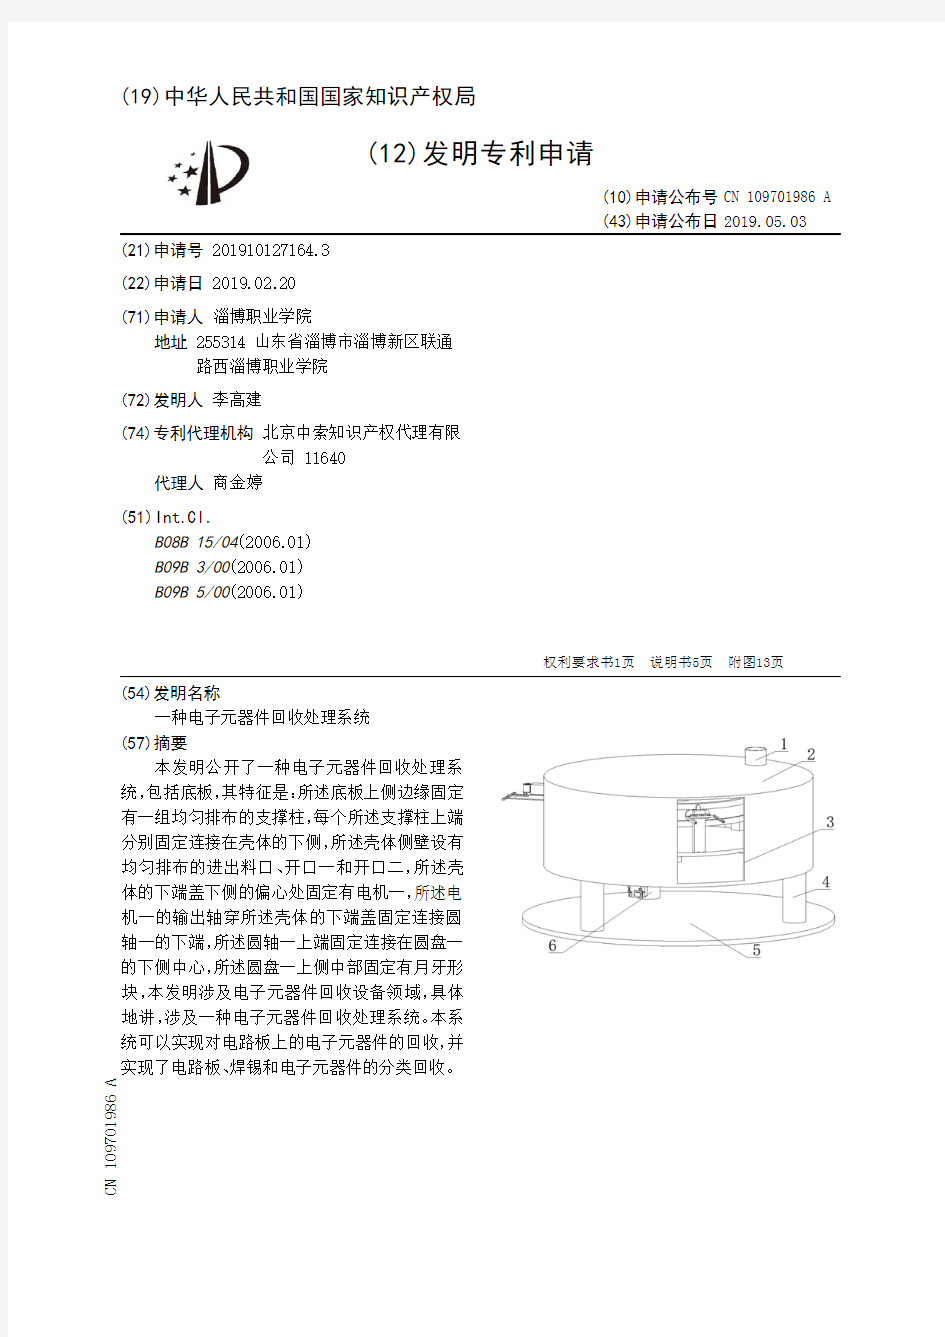 【CN109701986A】一种电子元器件回收处理系统【专利】